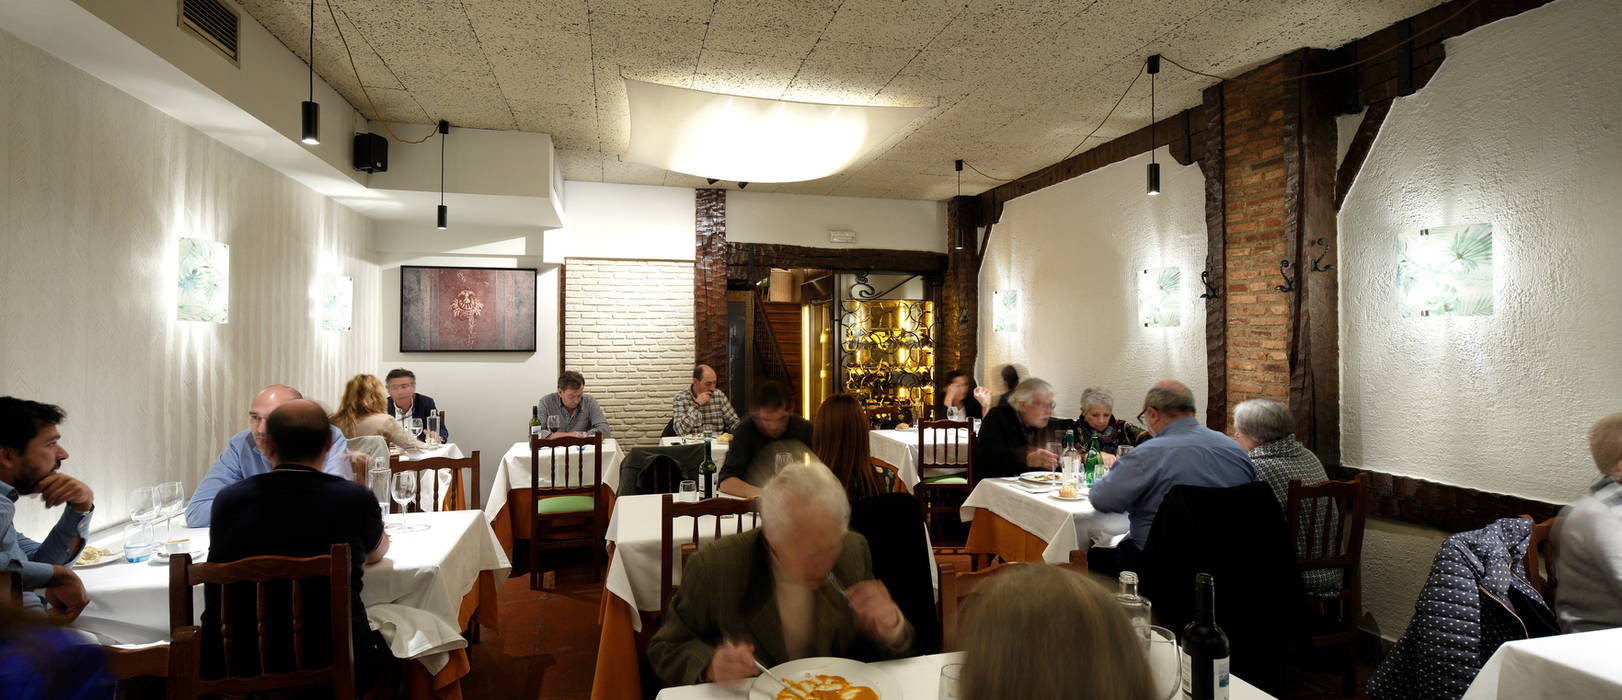 Proyecto hostelería en tiempo récord, restaurante Markina, Bilbaodiseño Bilbaodiseño Commercial spaces Gastronomy